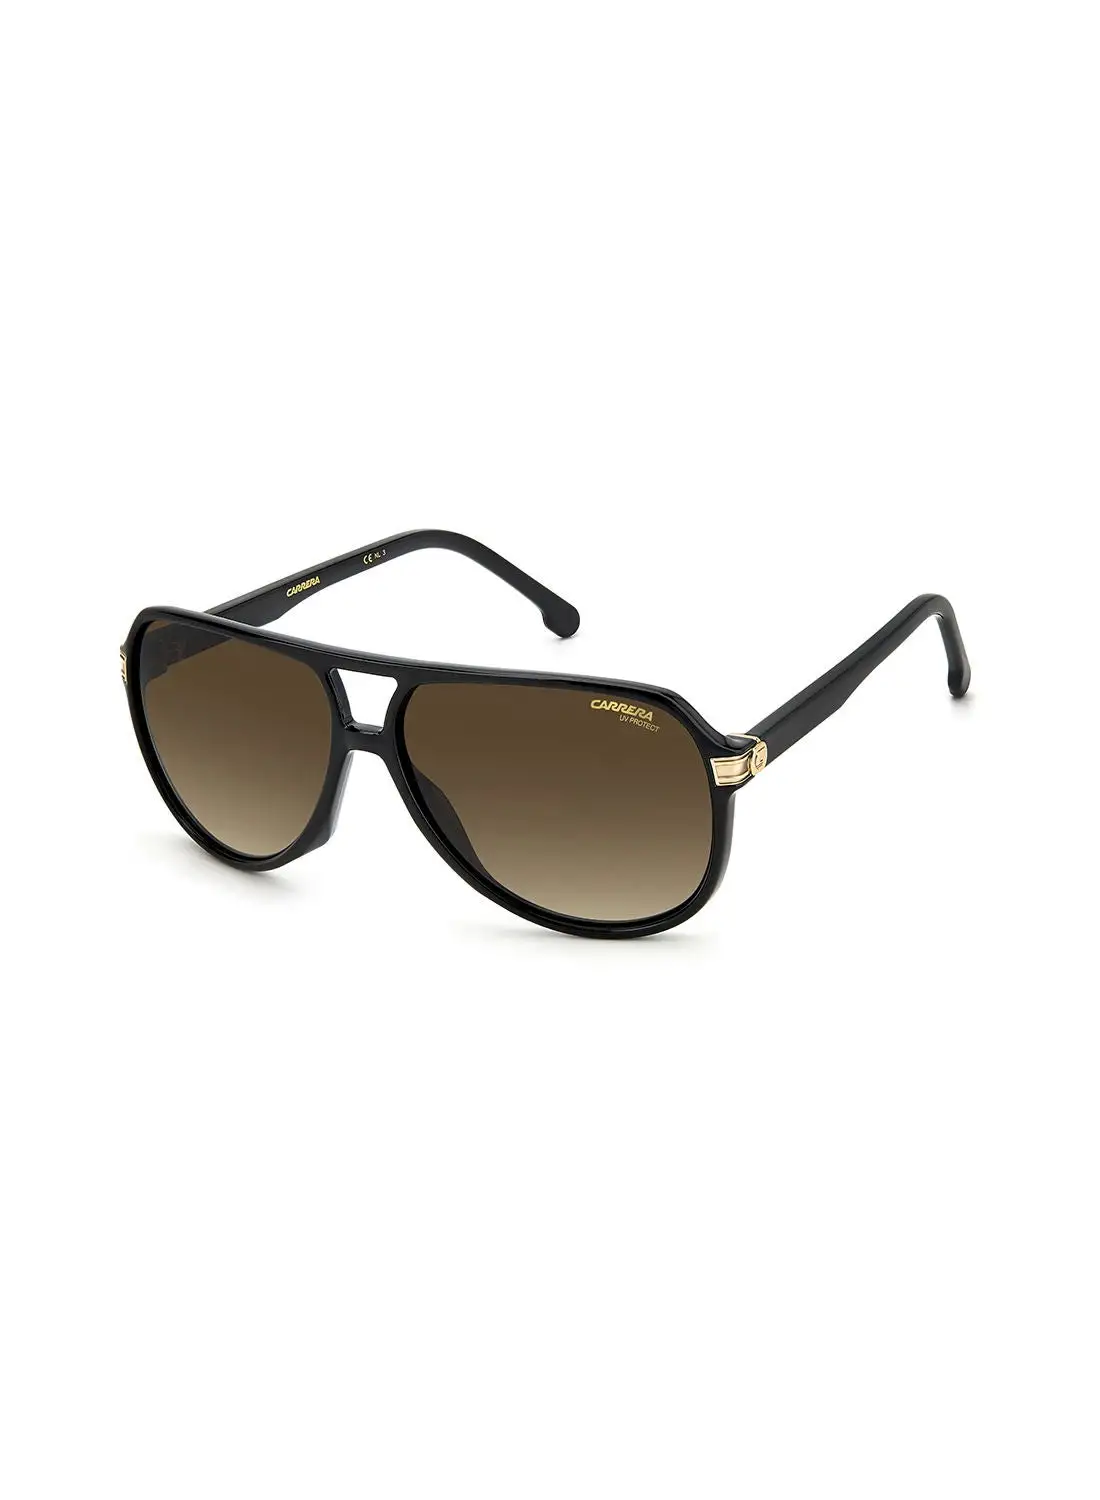 نظارة شمسية كاريرا للجنسين للحماية من الأشعة فوق البنفسجية - Carrera 1045/S Blk Gold 61 - مقاس العدسة: 61 ملم